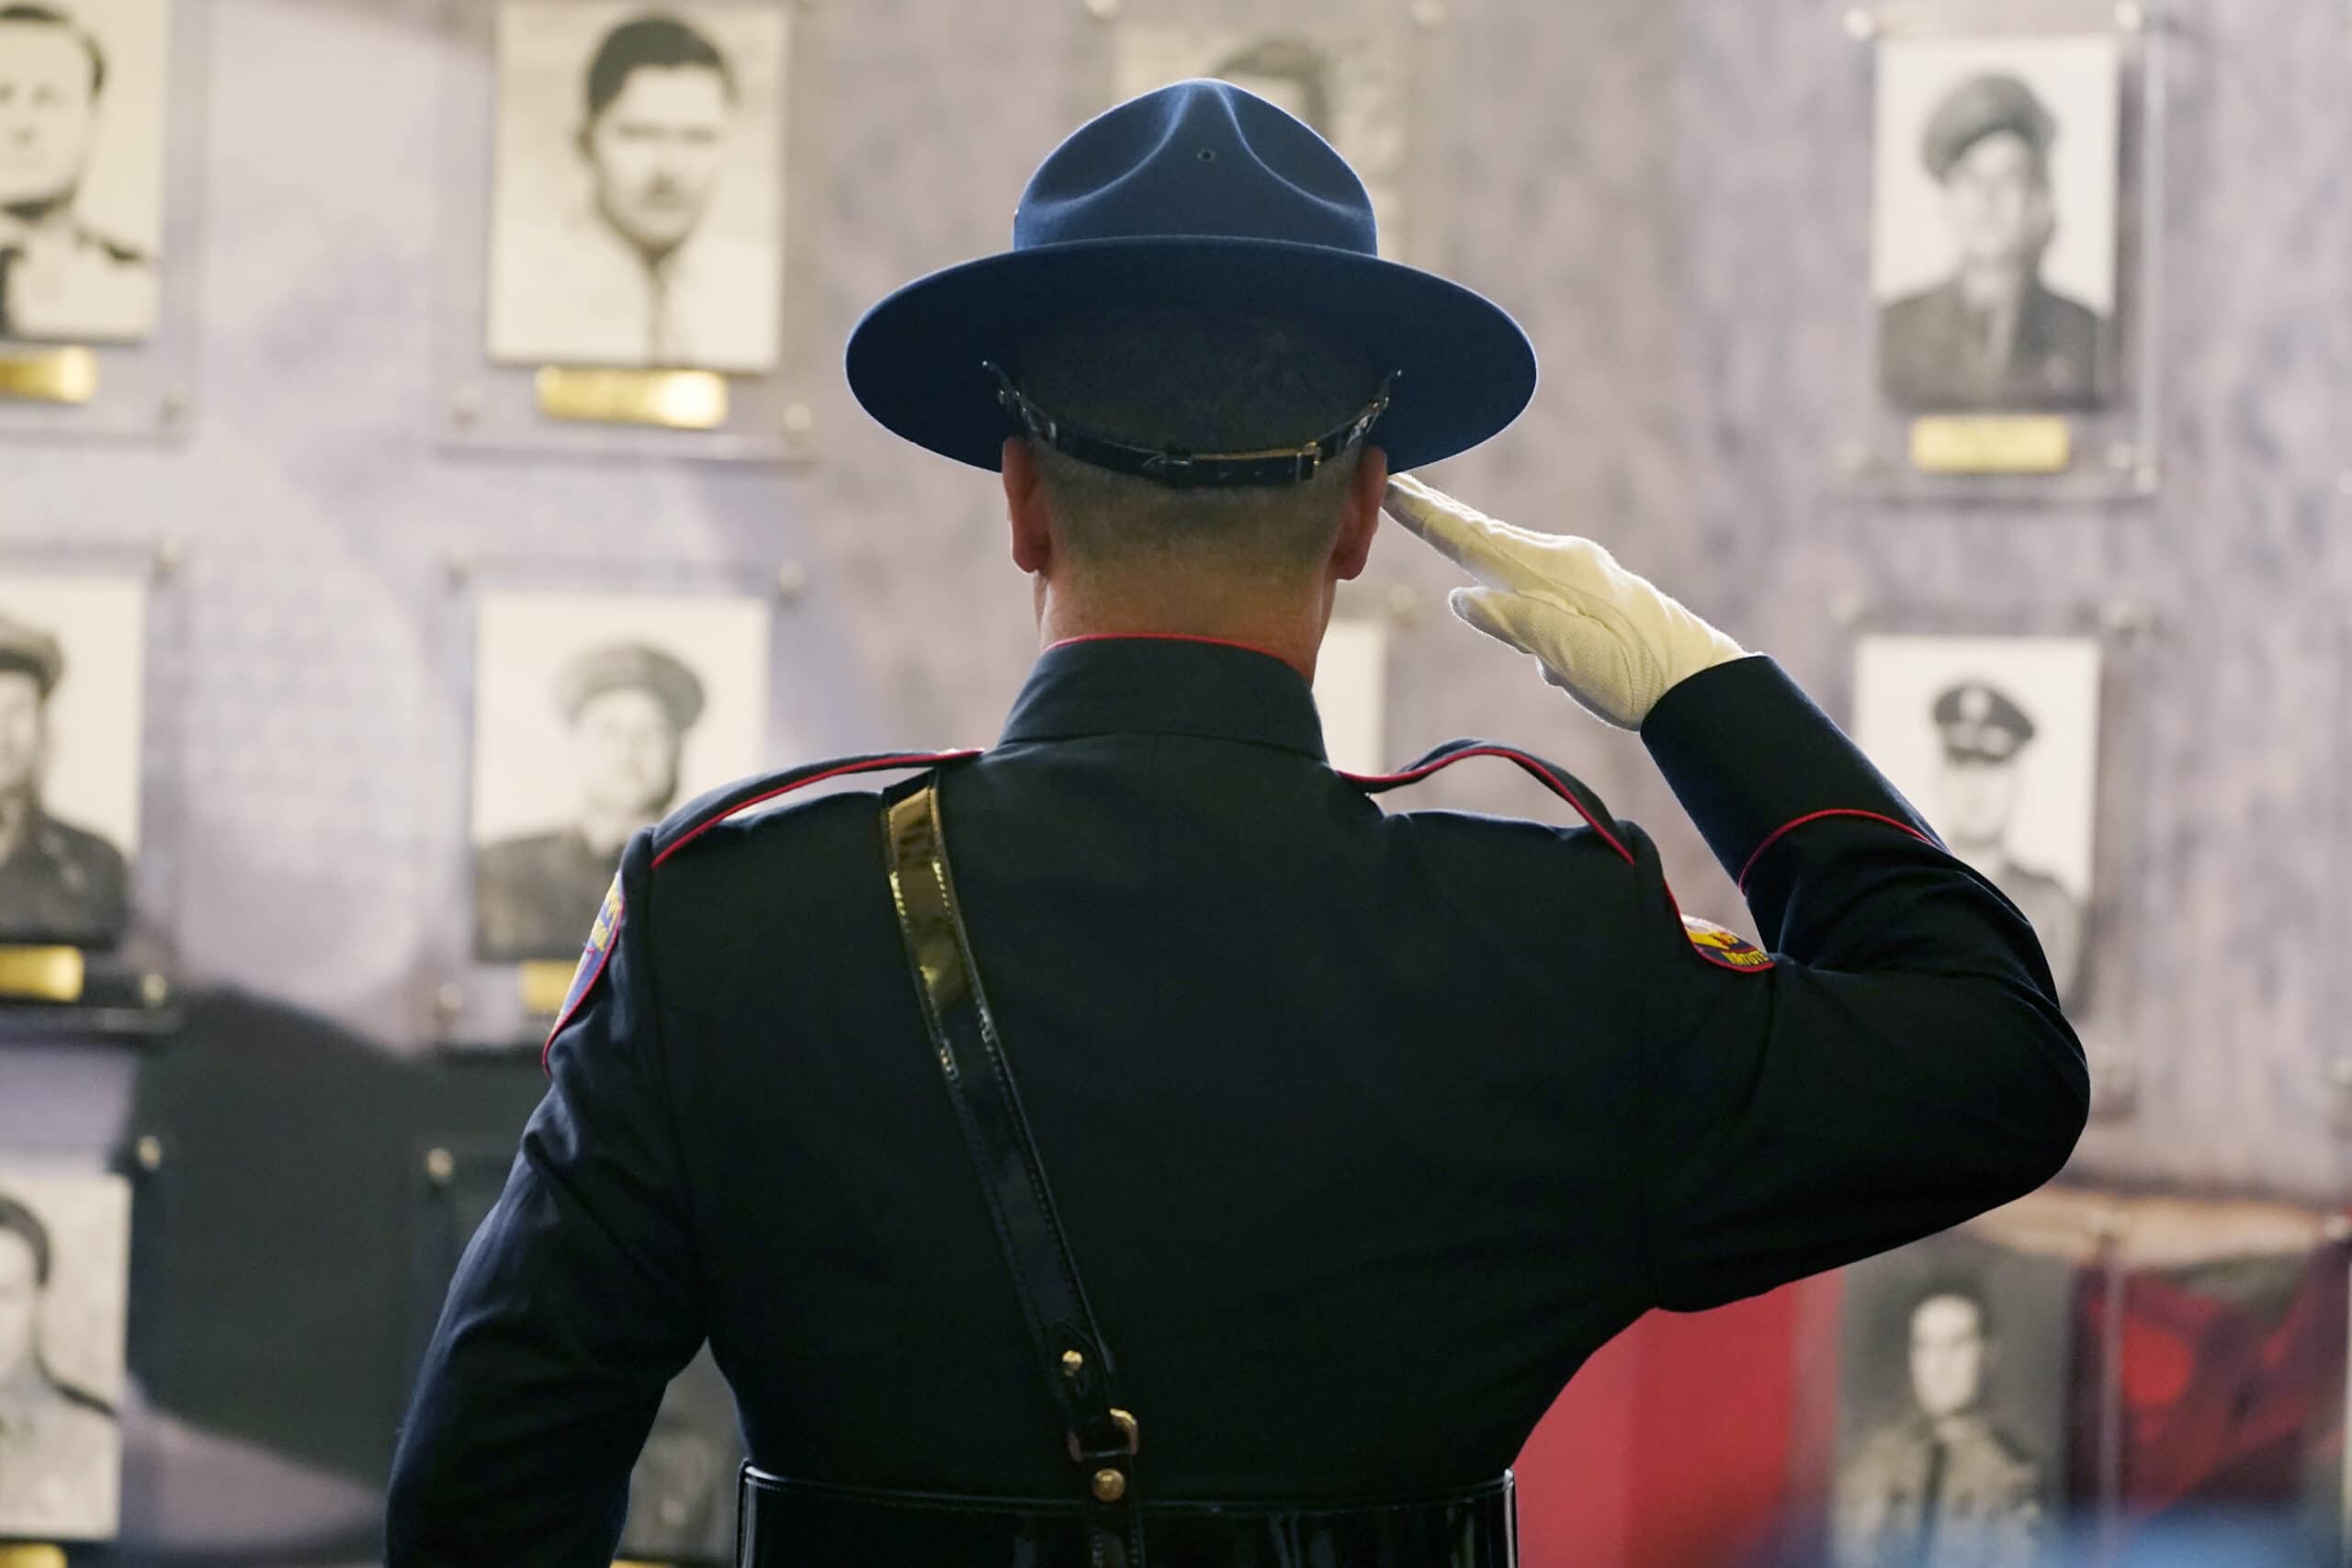 Officer Memorial/AP